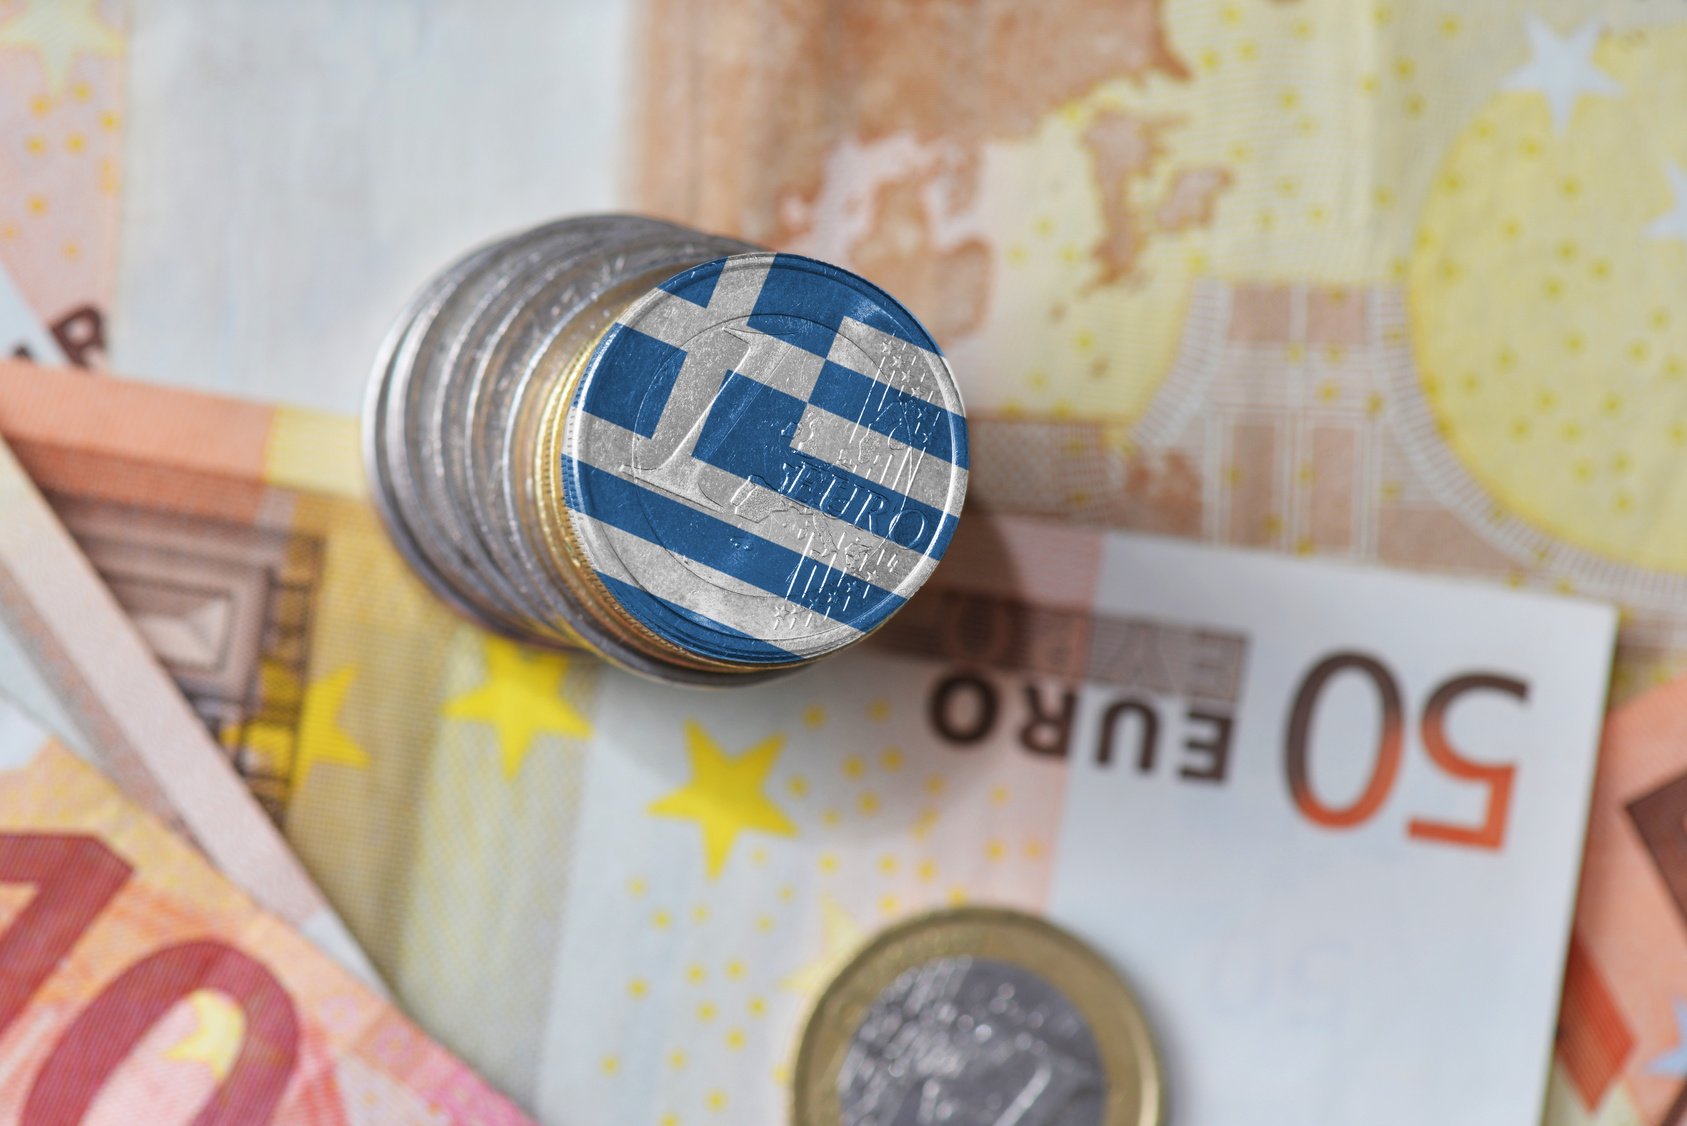 Ευρωπαϊκή Επιτροπή: Εγκρίνεται ελληνικό καθεστώς ύψους 500 εκατ. ευρώ για τη στήριξη εταιρειών υπηρεσιών εστίασης που πλήττονται από την έξαρση του κορωνοϊού